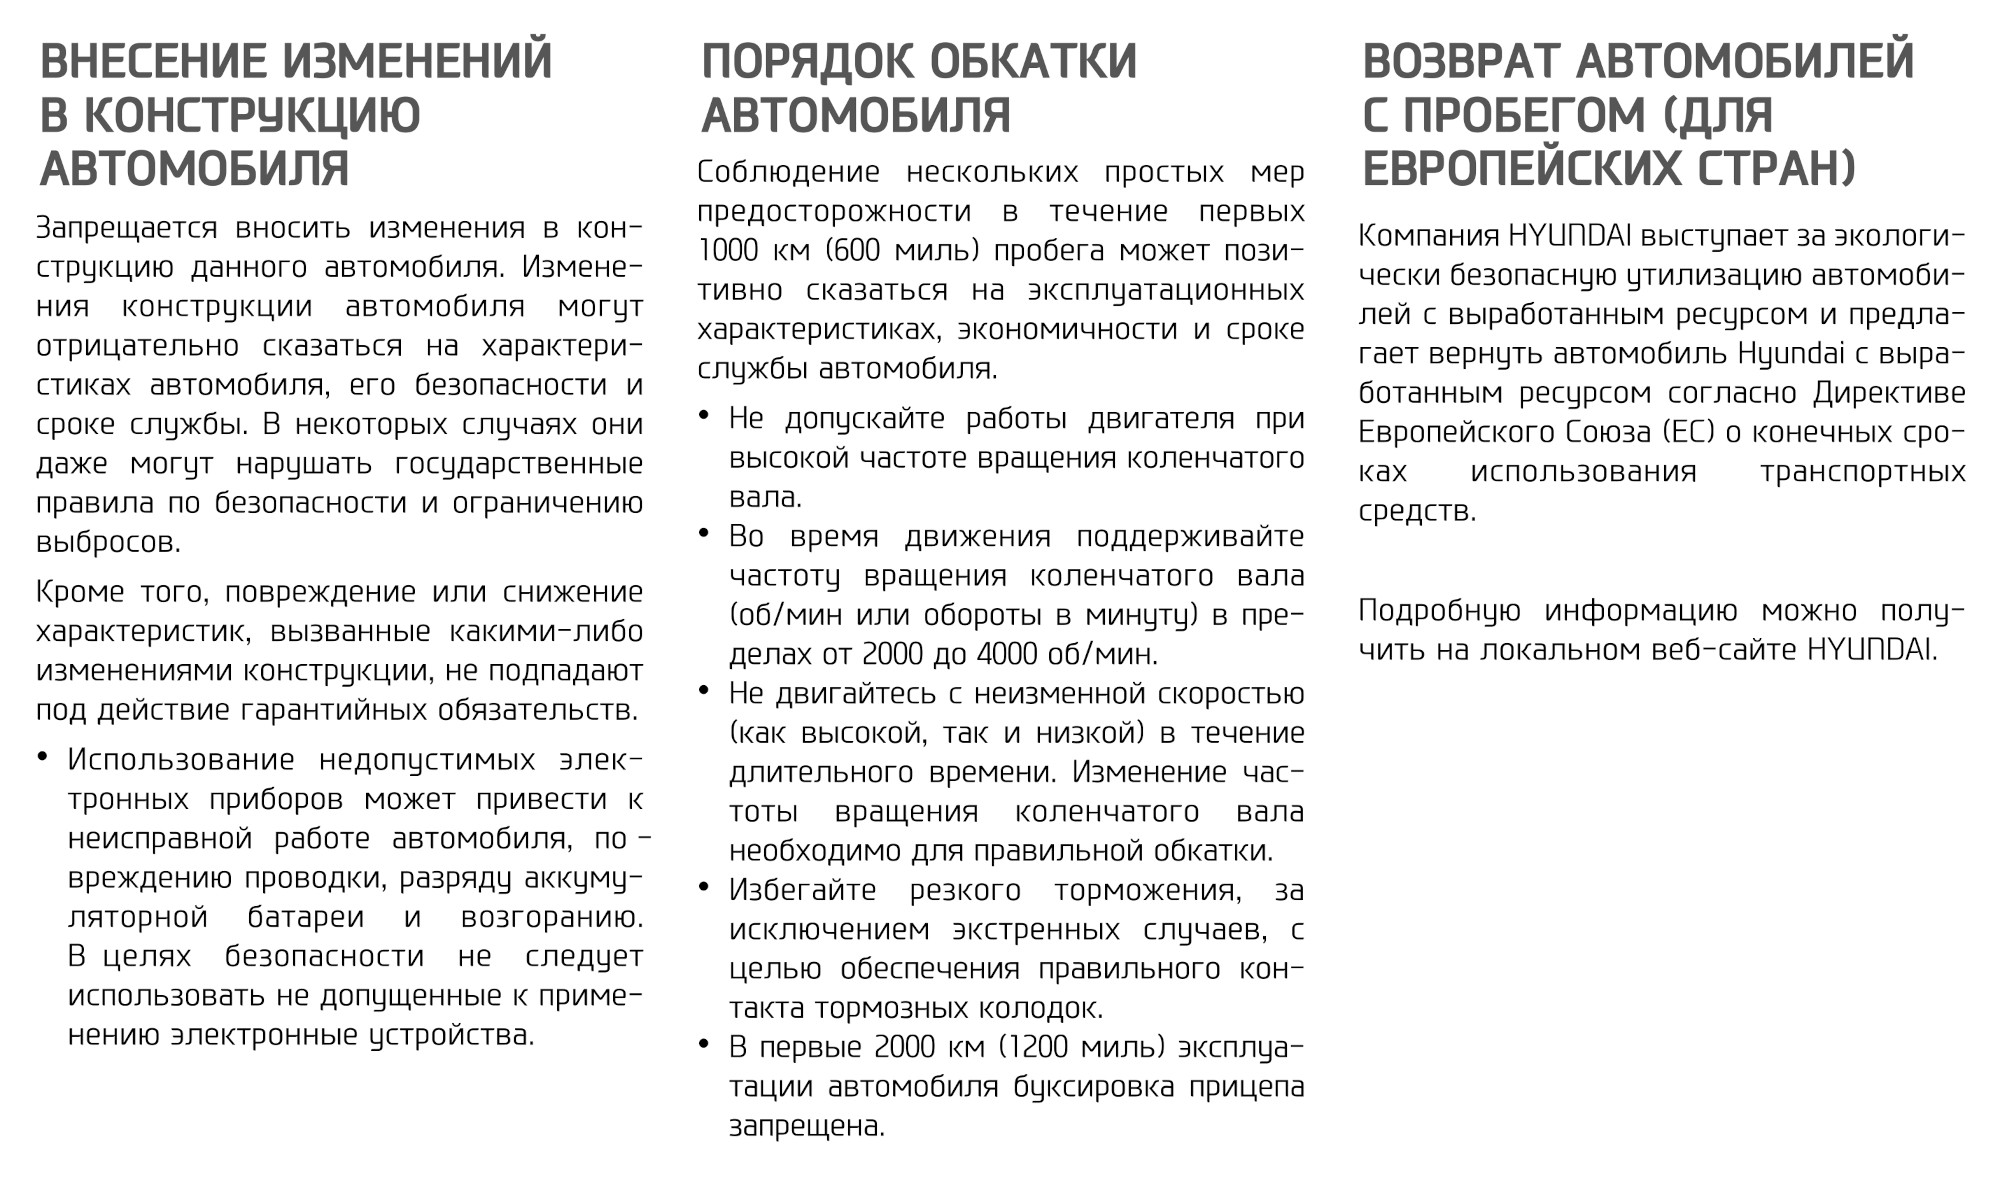 На первых страницах руководства по эксплуатации Hyundai Creta расписали порядок обкатки автомобиля. Источник: hyundai.ru